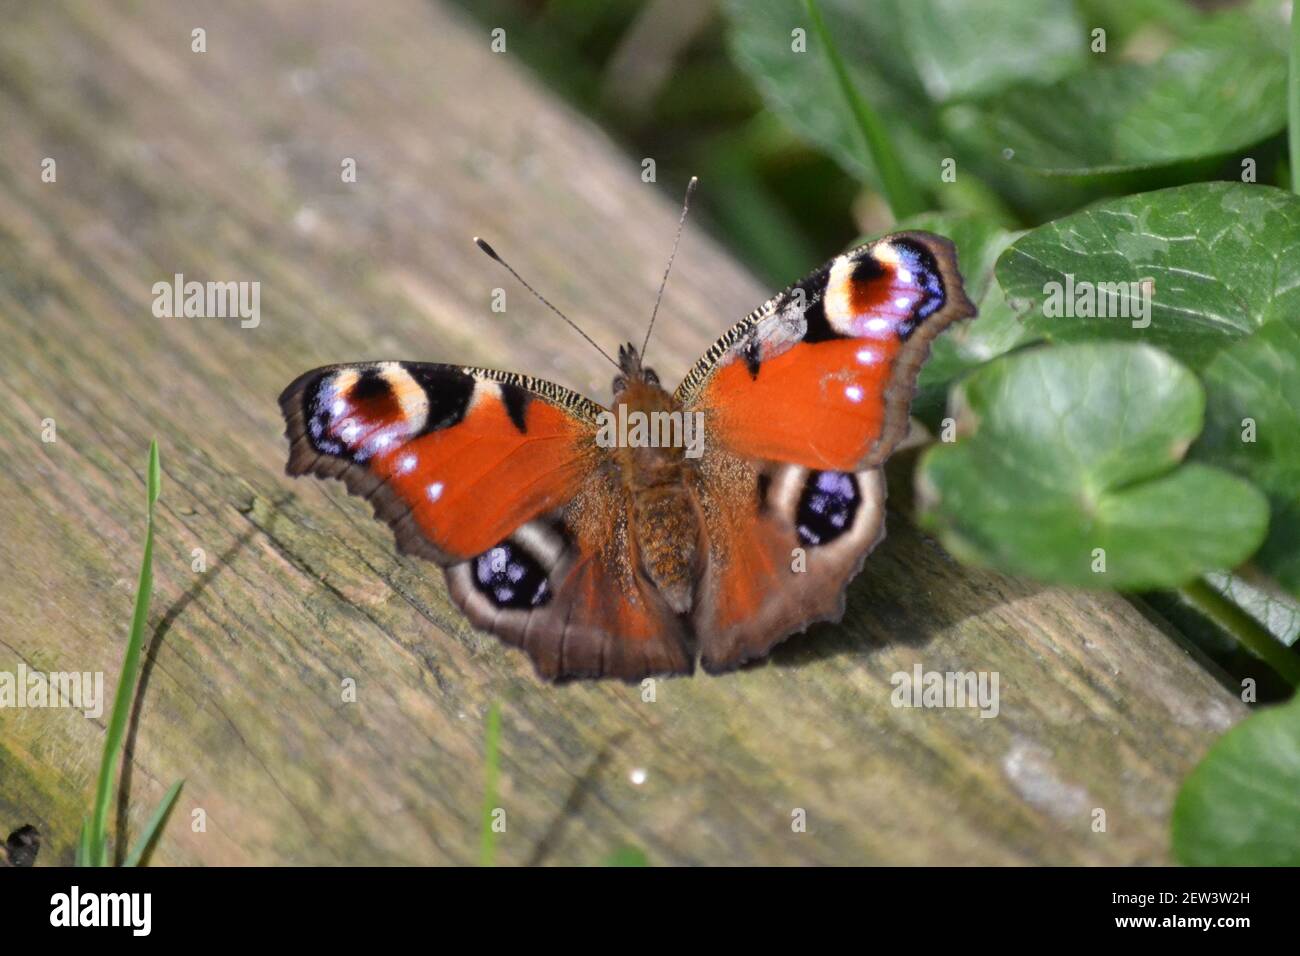 Papillon de paon sur la planche de bois - Inachis io - Insecte de jardin - multicolore - papillon sur un Soleil Jour - Wingspan 63mm - Filey - Yorkshire UK Banque D'Images